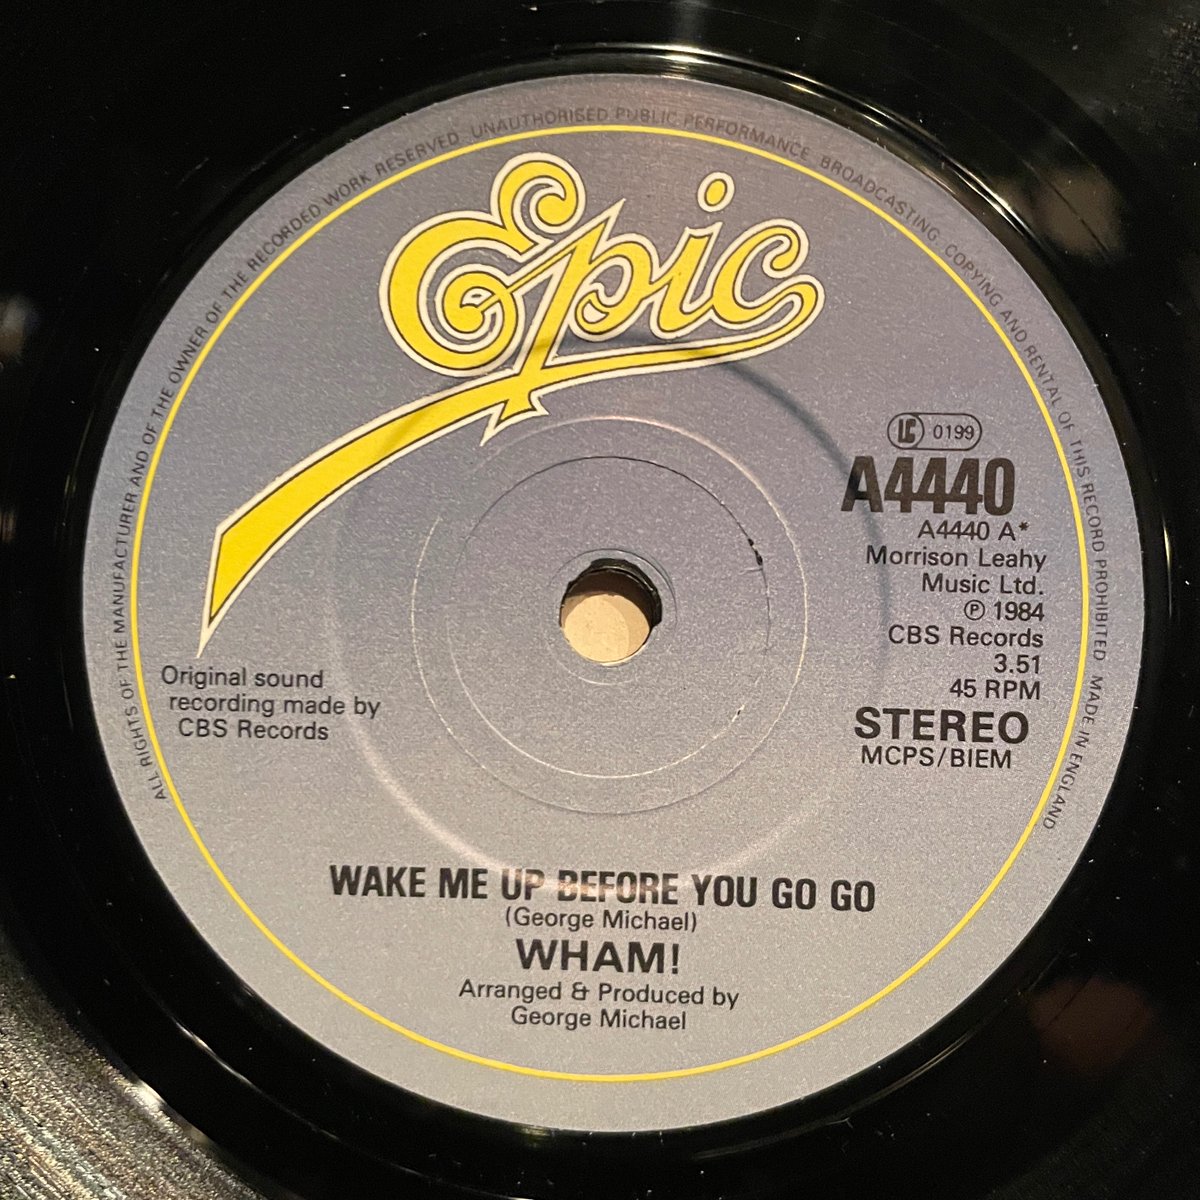 ほな7いこか
WHAM! / Wake Me Up Before You Go-Go [’84 Epic --- A 4440]
#wham #WakeMeUpBeforeYouGoGo #GeorgeMichael #AndrewRidgeley #MakeItBig #PeterSaville #listeningbar #vinylbar #musicbar #レコードバー #mhc22052024
youtube.com/watch?v=h75mqU…